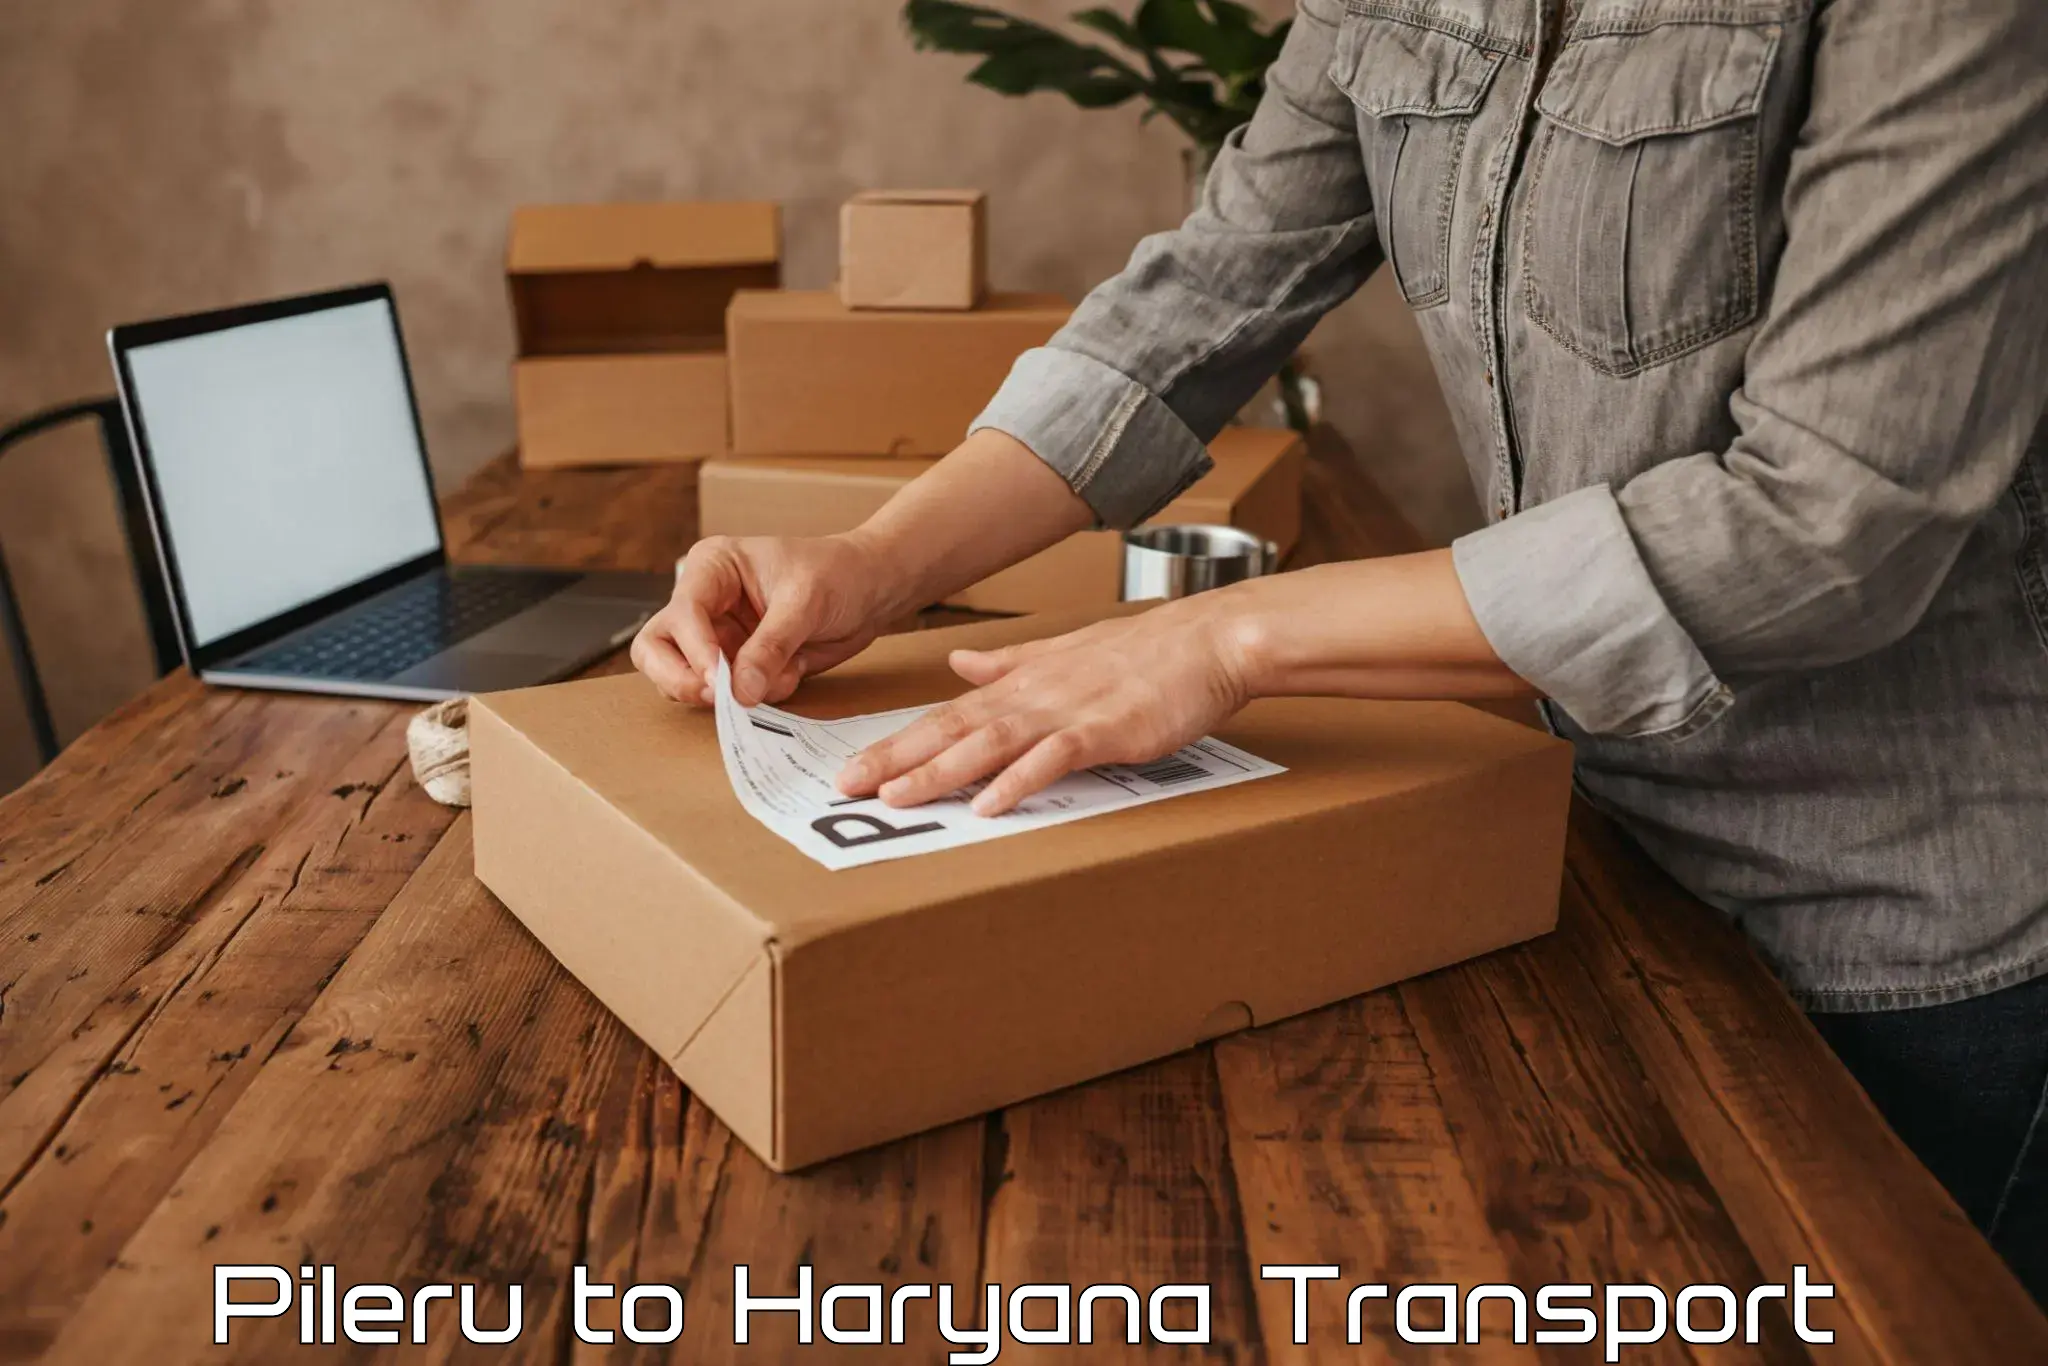 Lorry transport service Pileru to NCR Haryana